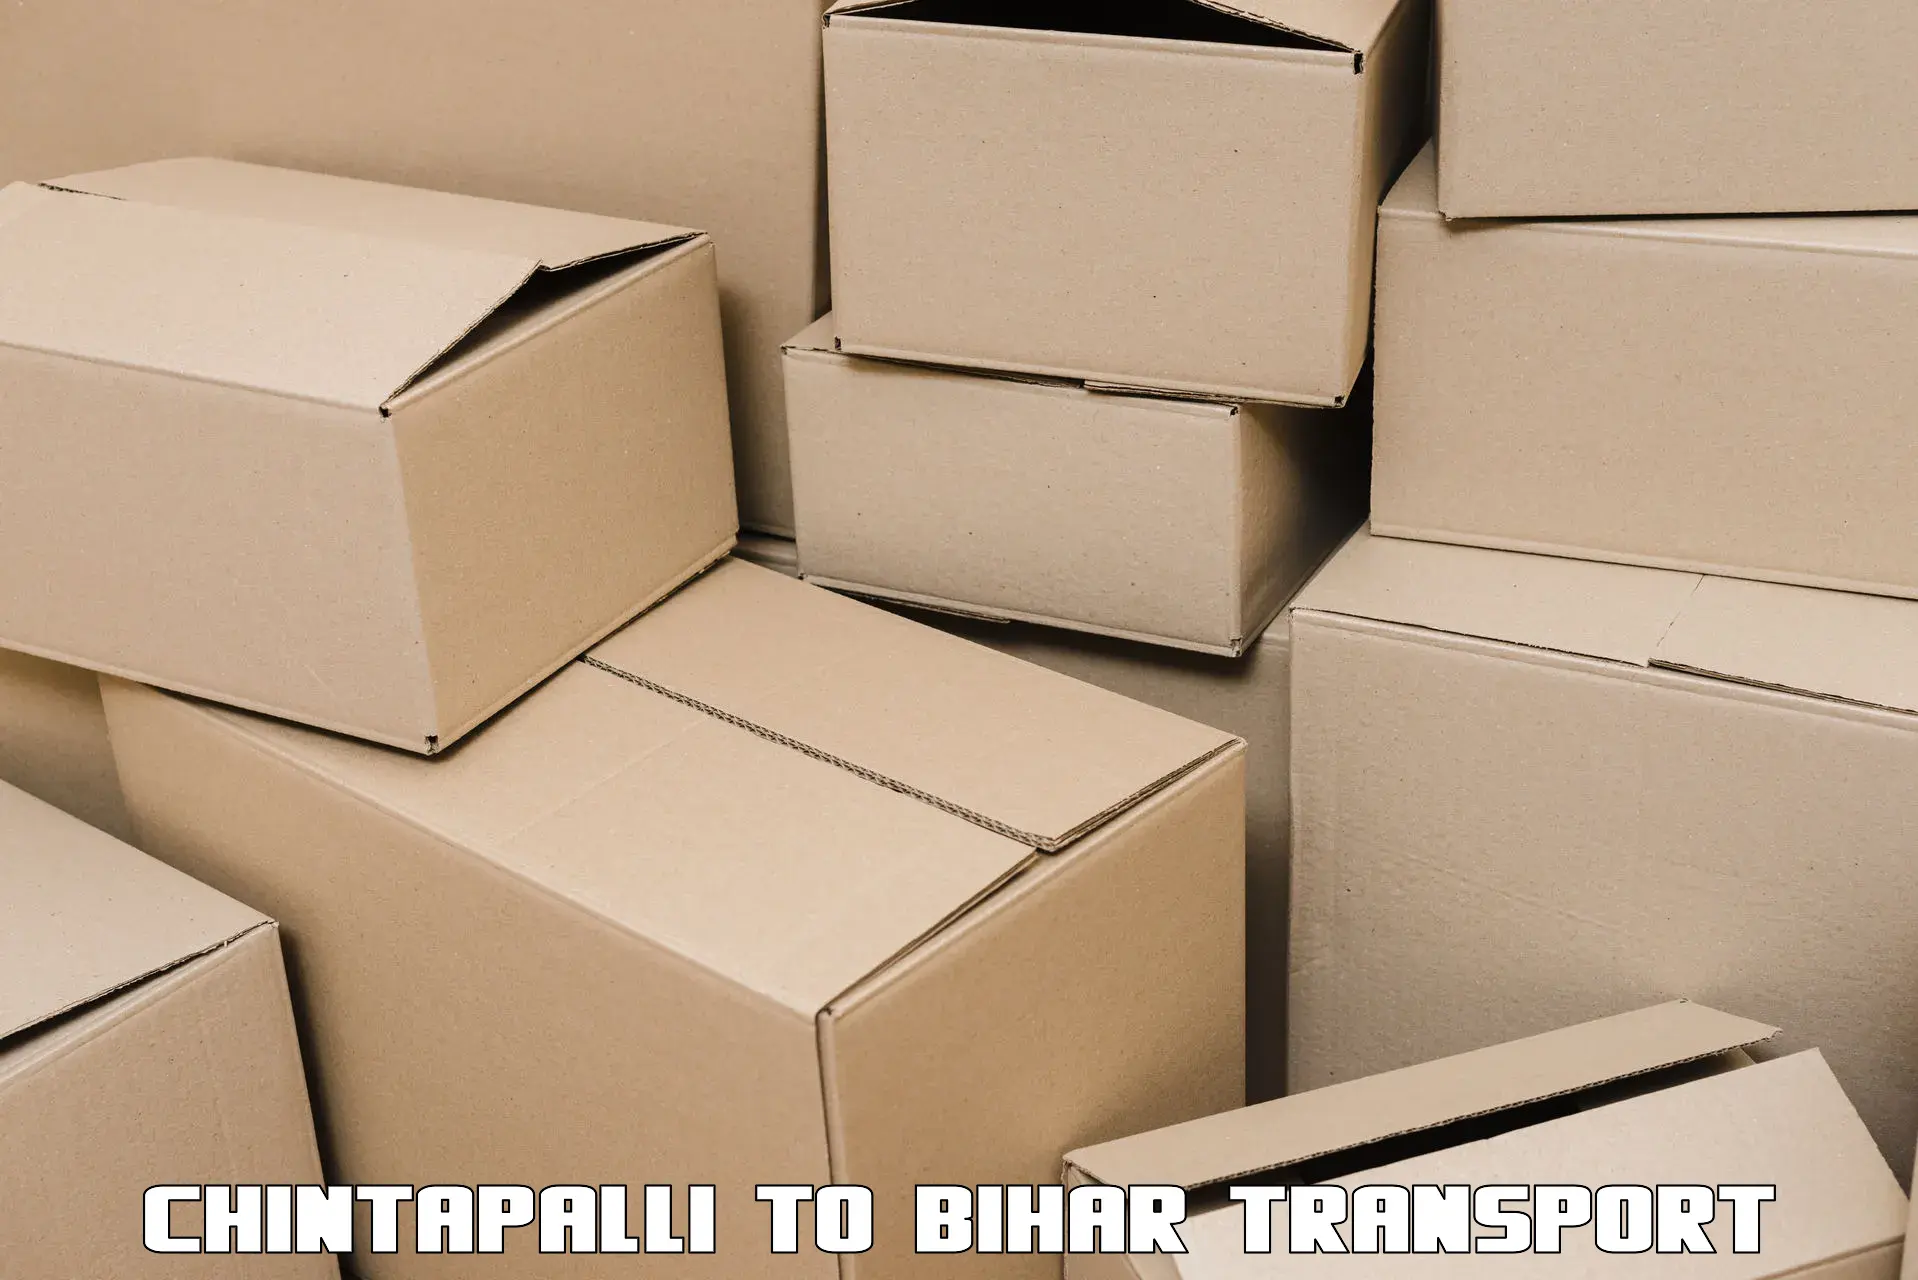 Daily transport service Chintapalli to Kursela